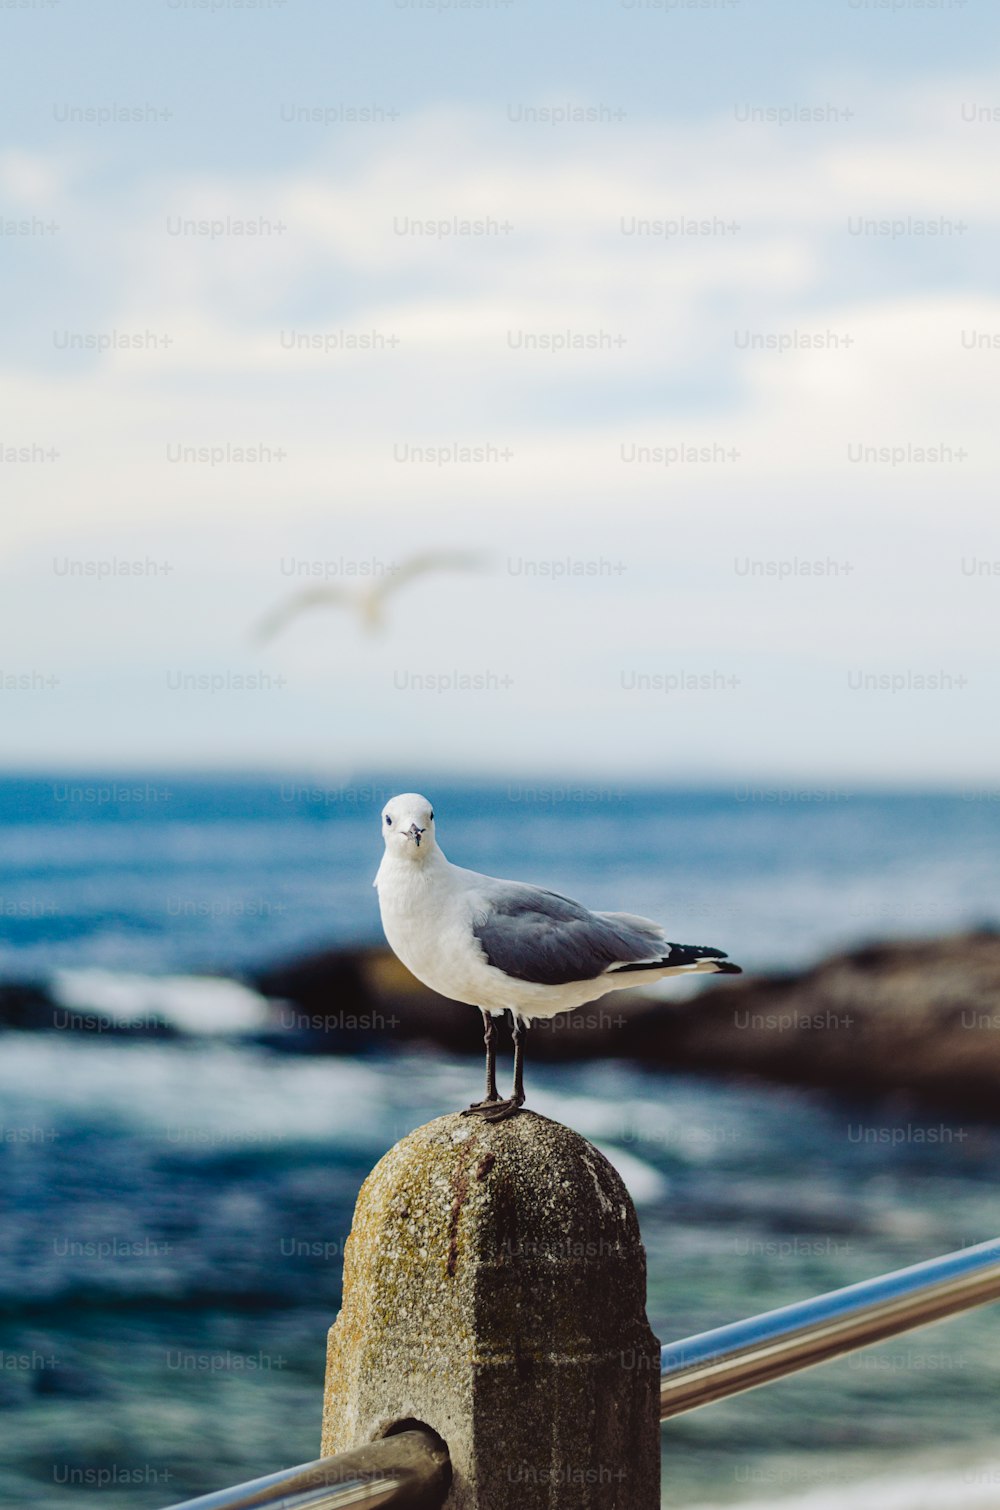 Un gabbiano in piedi su una ringhiera vicino all'oceano